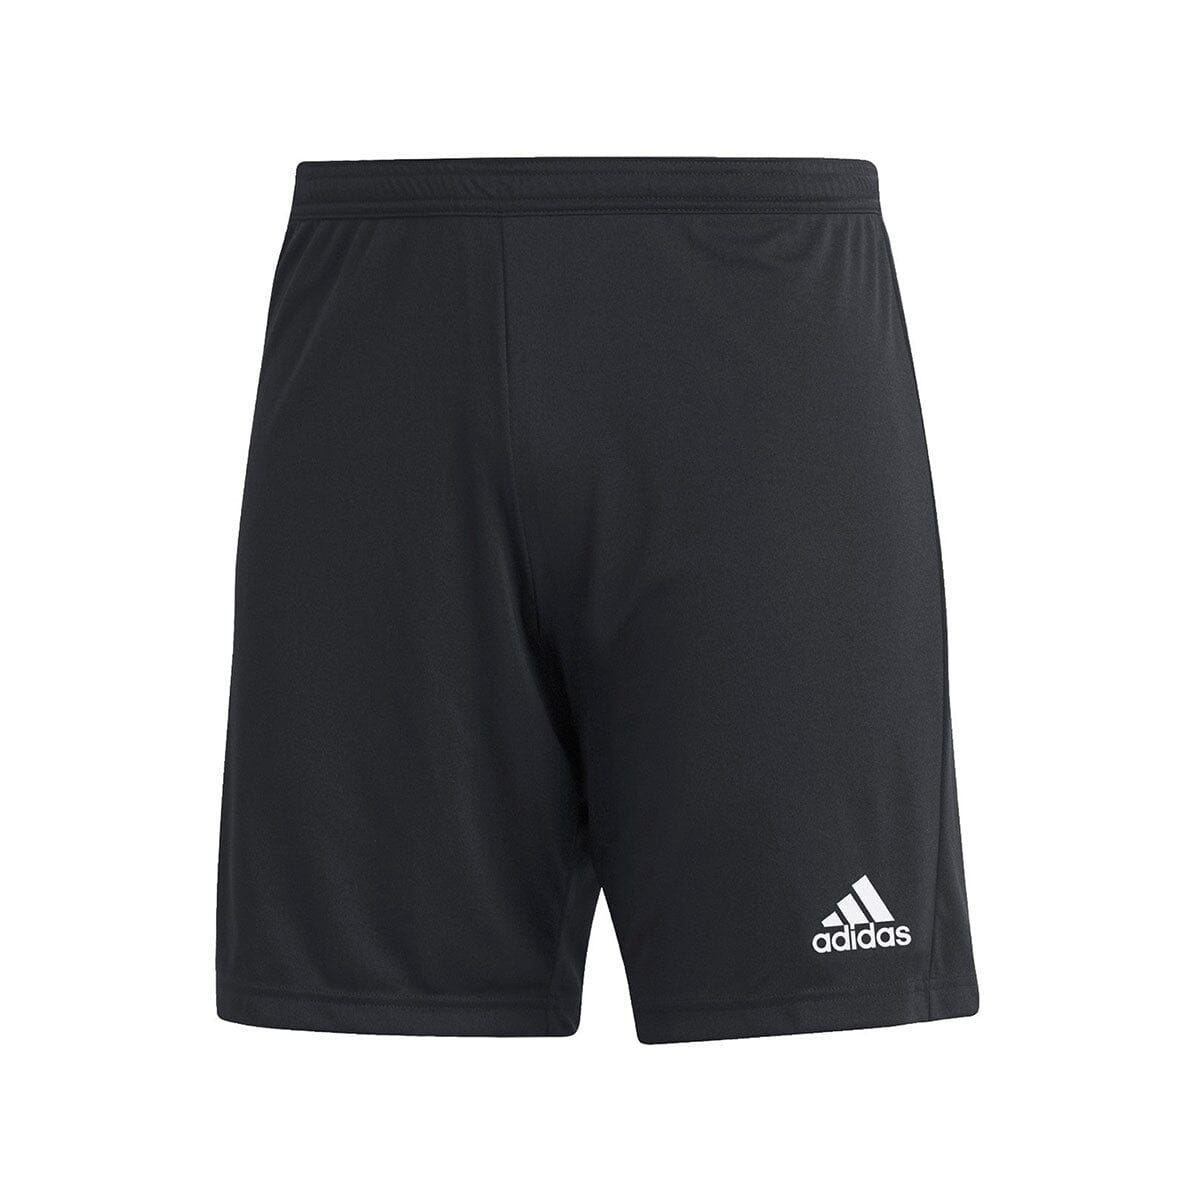 adidas Men's Entrada 22 Shorts Shorts Adidas Adult Small Black 